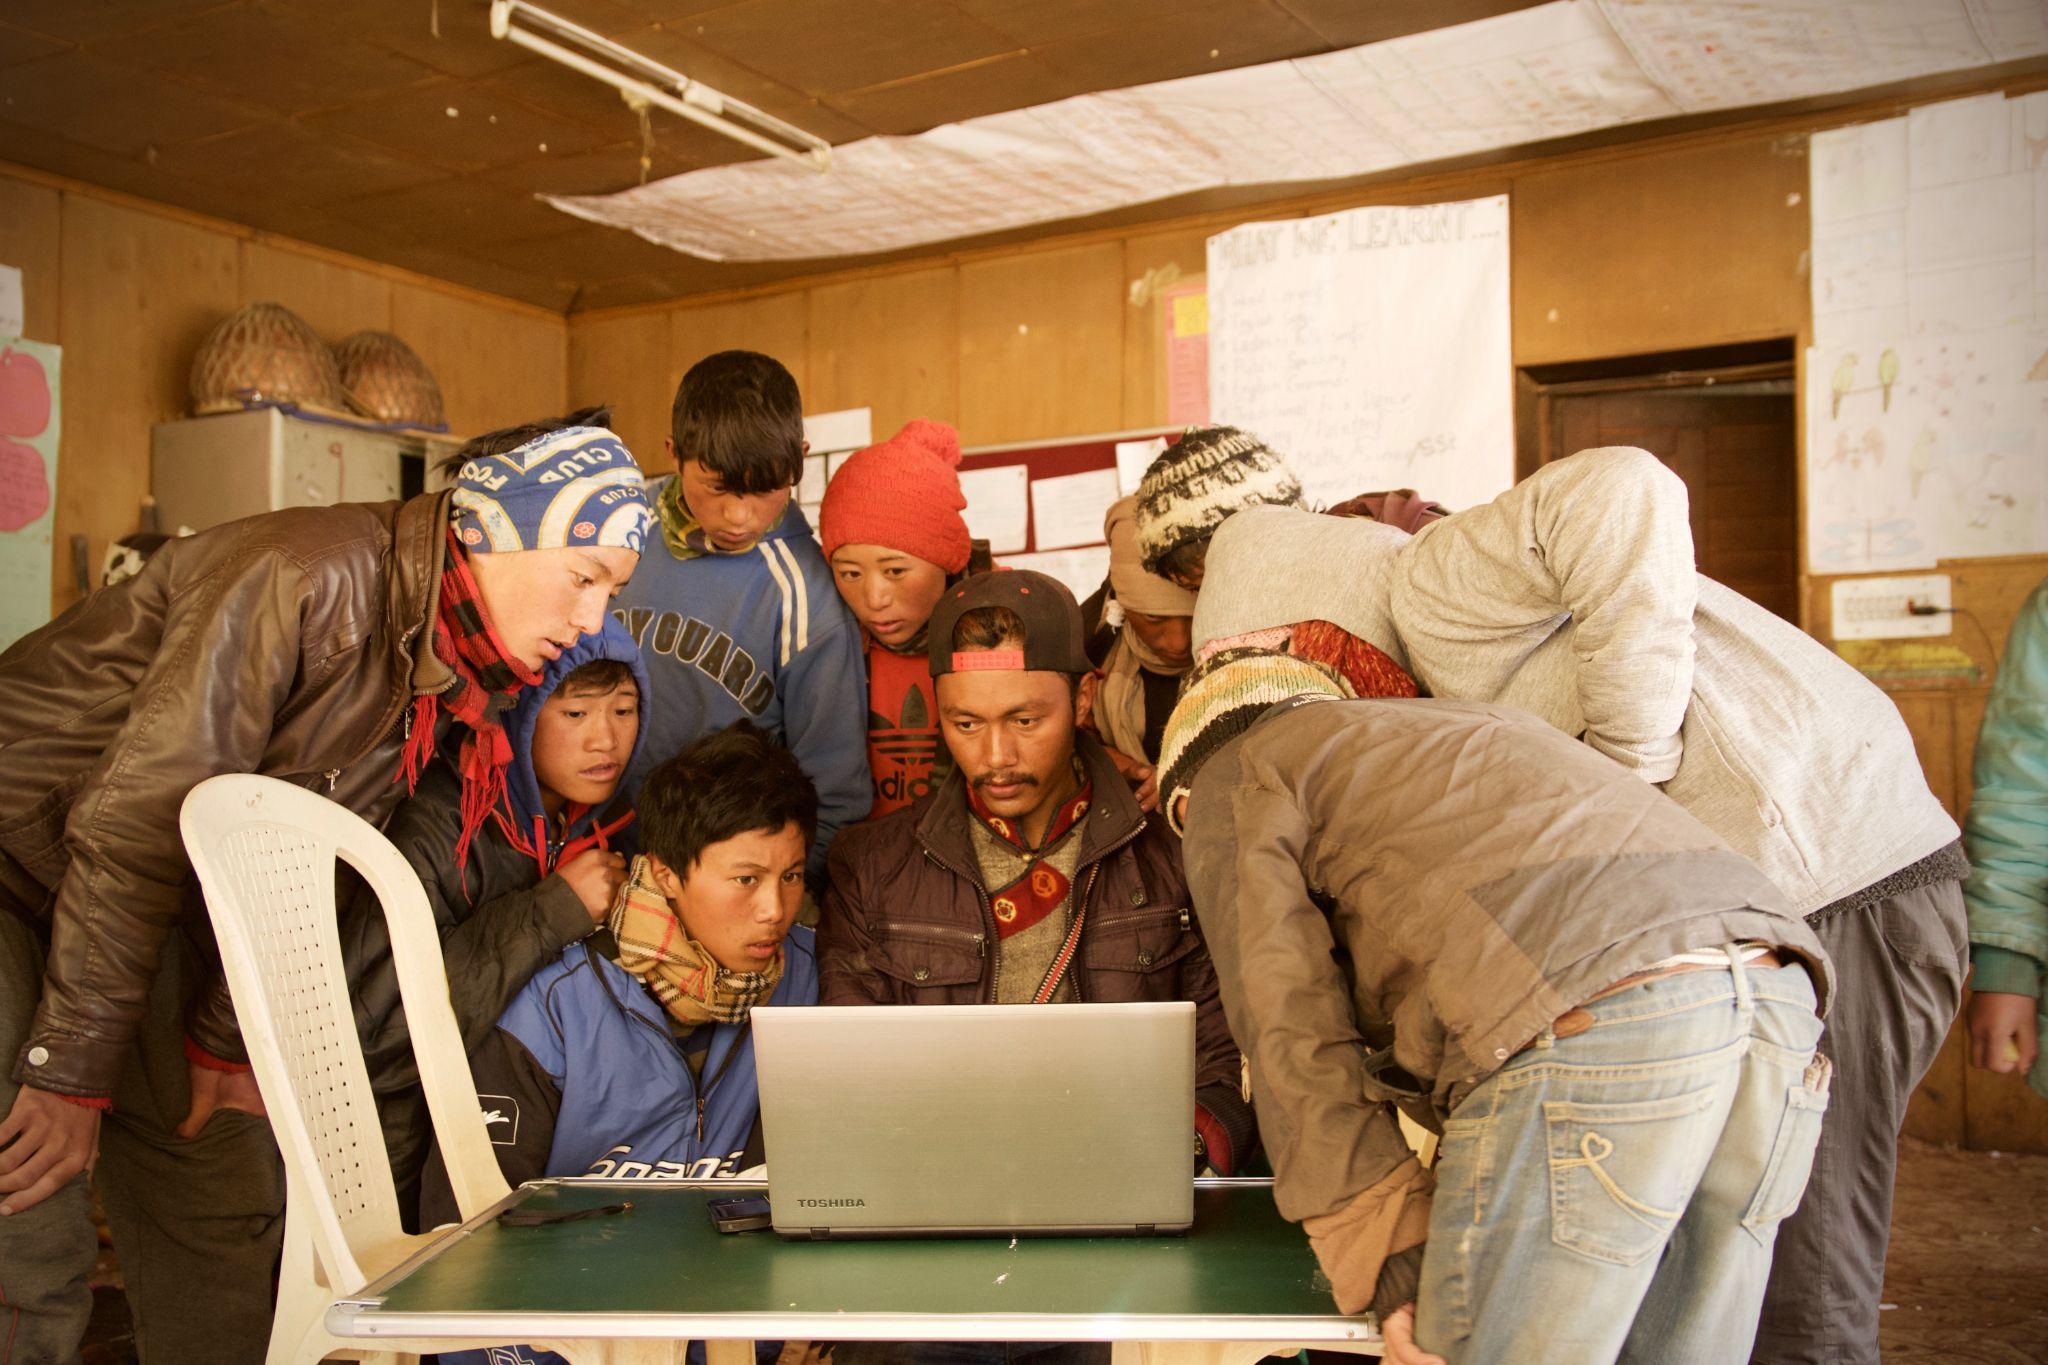 Pessoas reunidas ao redor de um laptop em pé sobre uma mesa simples com uma cadeira de plástico à esquerda. O plano de fundo parece uma escola de um país em desenvolvimento.